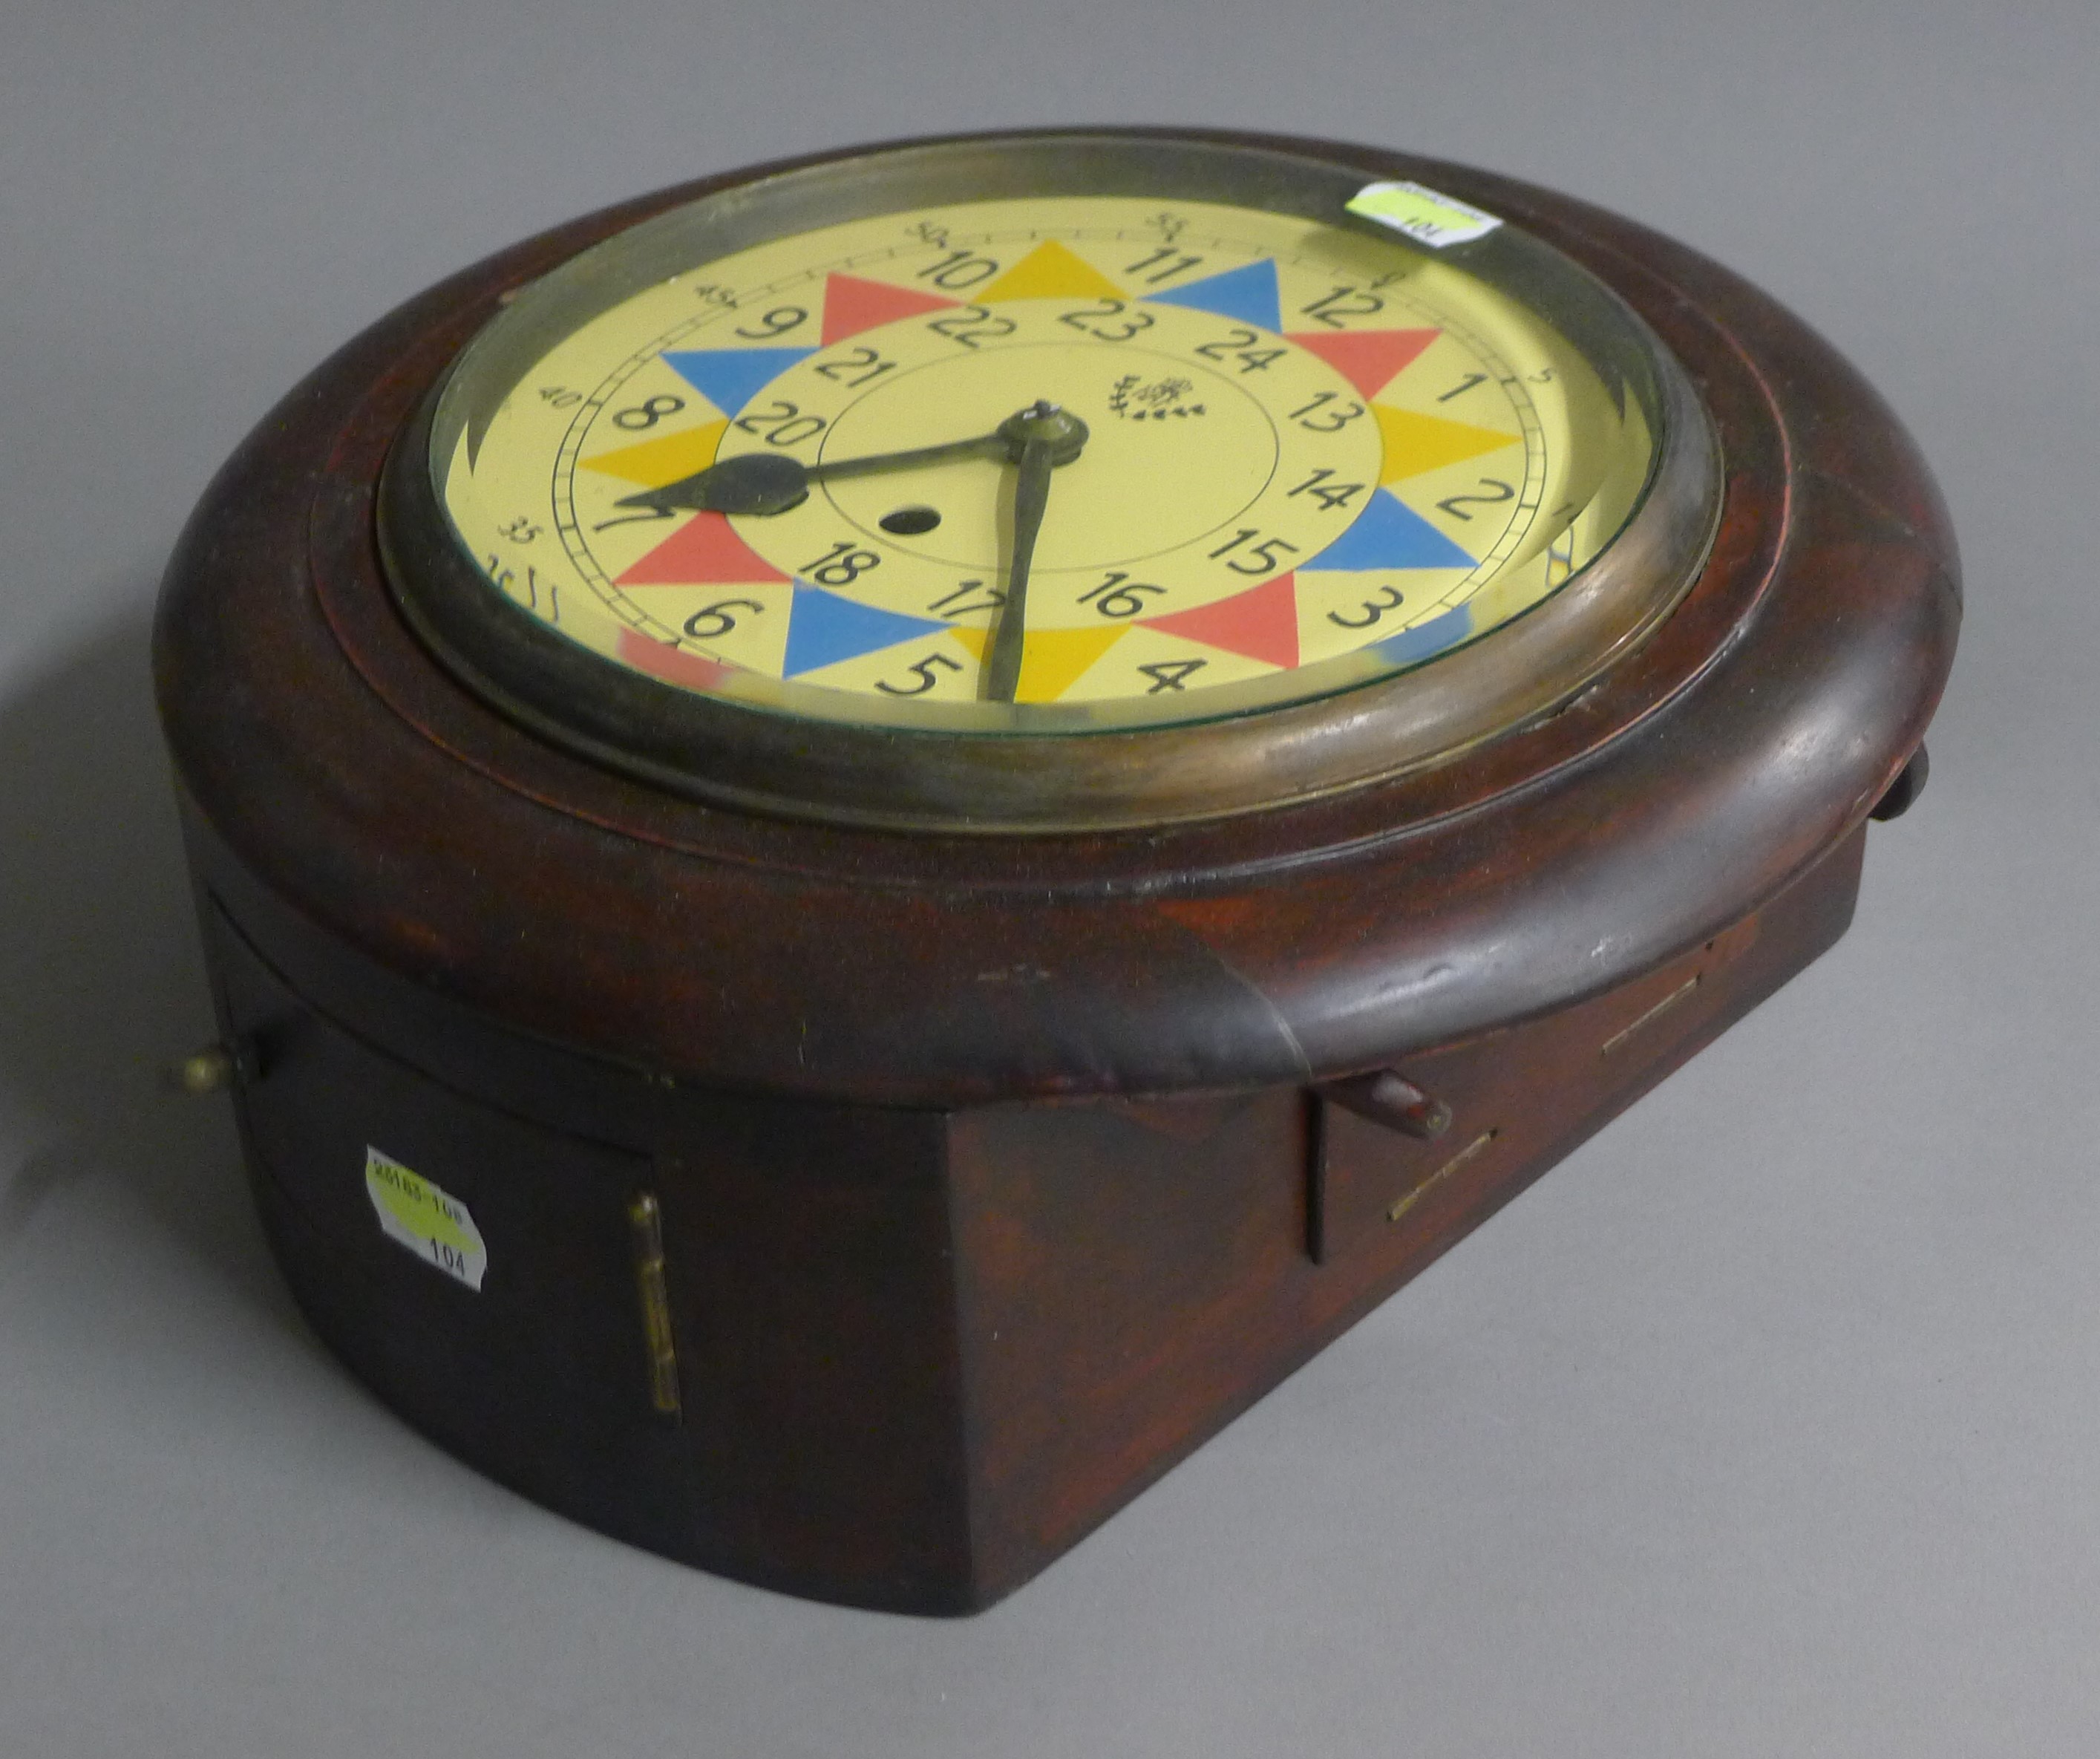 A fusee dial clock. 28 cm diameter. - Image 3 of 3